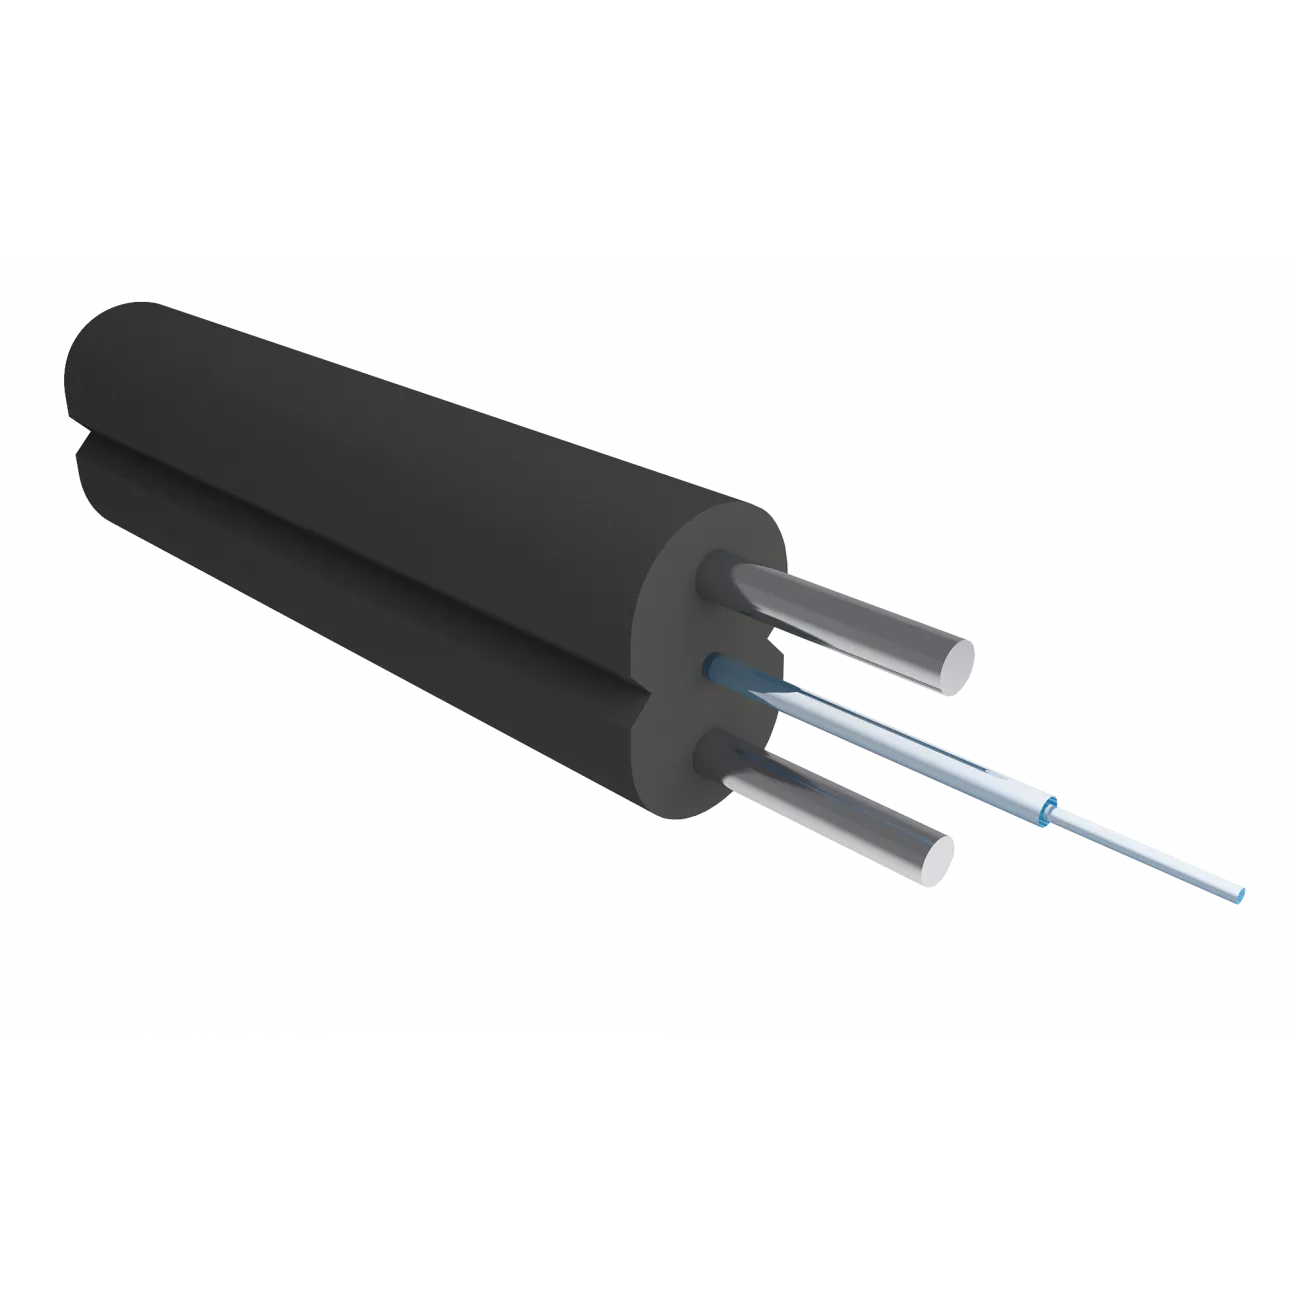 Назначение: Абонентский оптический кабель Alpha Mile FTTx (604-01-XX*) предназначен для прокладки внутри помещений, чердачных помещений, в трубах, кабель-каналах, лотках